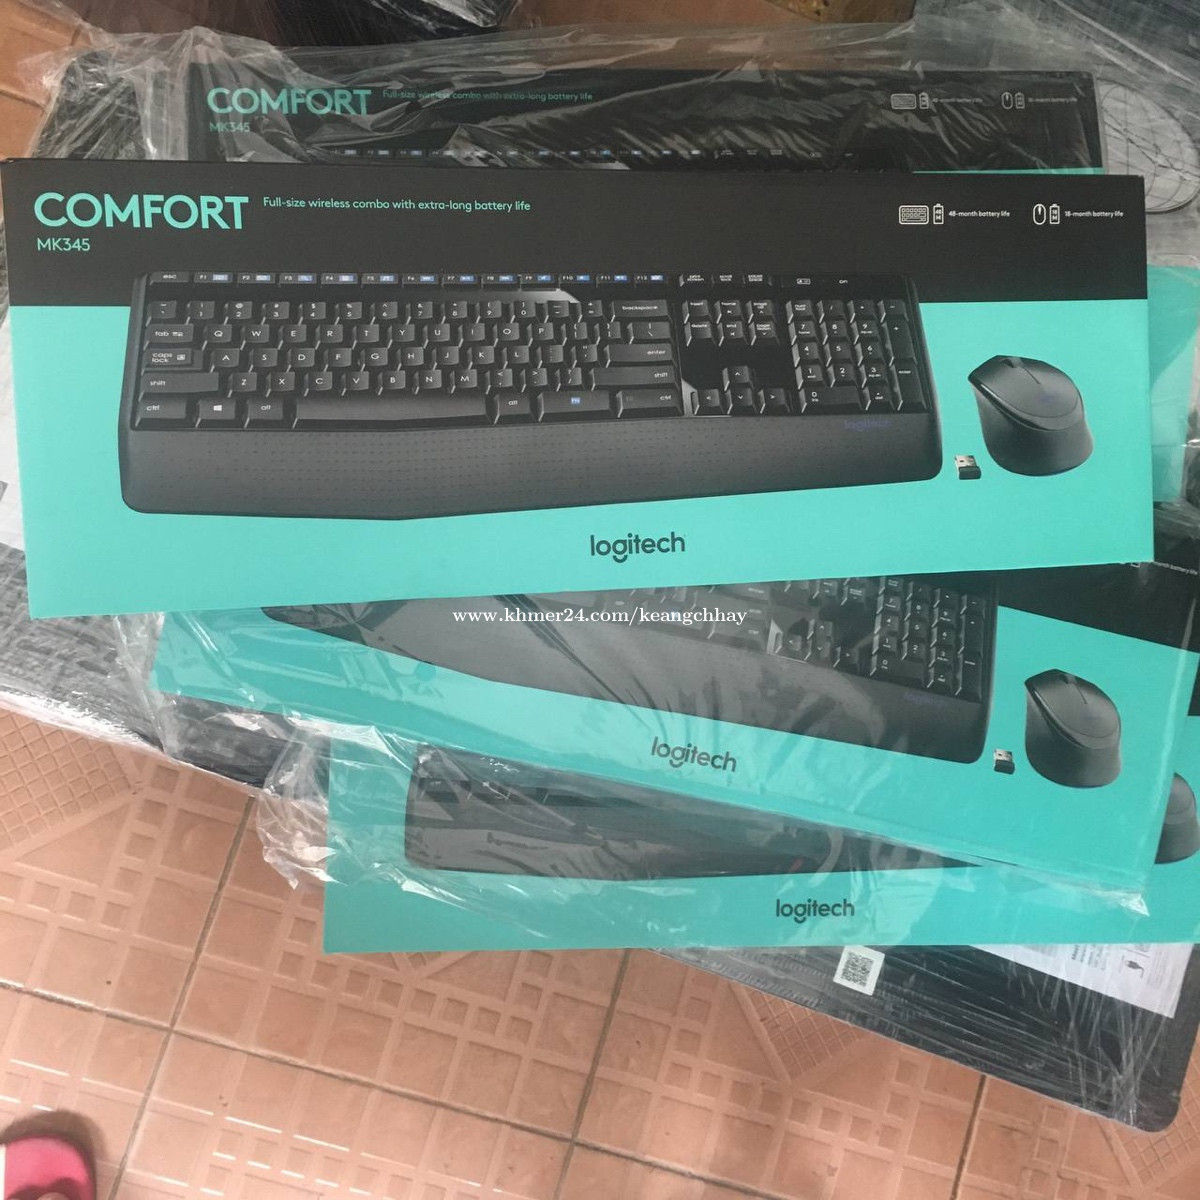 At sige sandheden skyskraber kontrol Logitech Comfort MK345 keyboard and mouse wireless Price $30.00 in Phnom  Penh, Cambodia - Keang Chhay | Khmer24.com